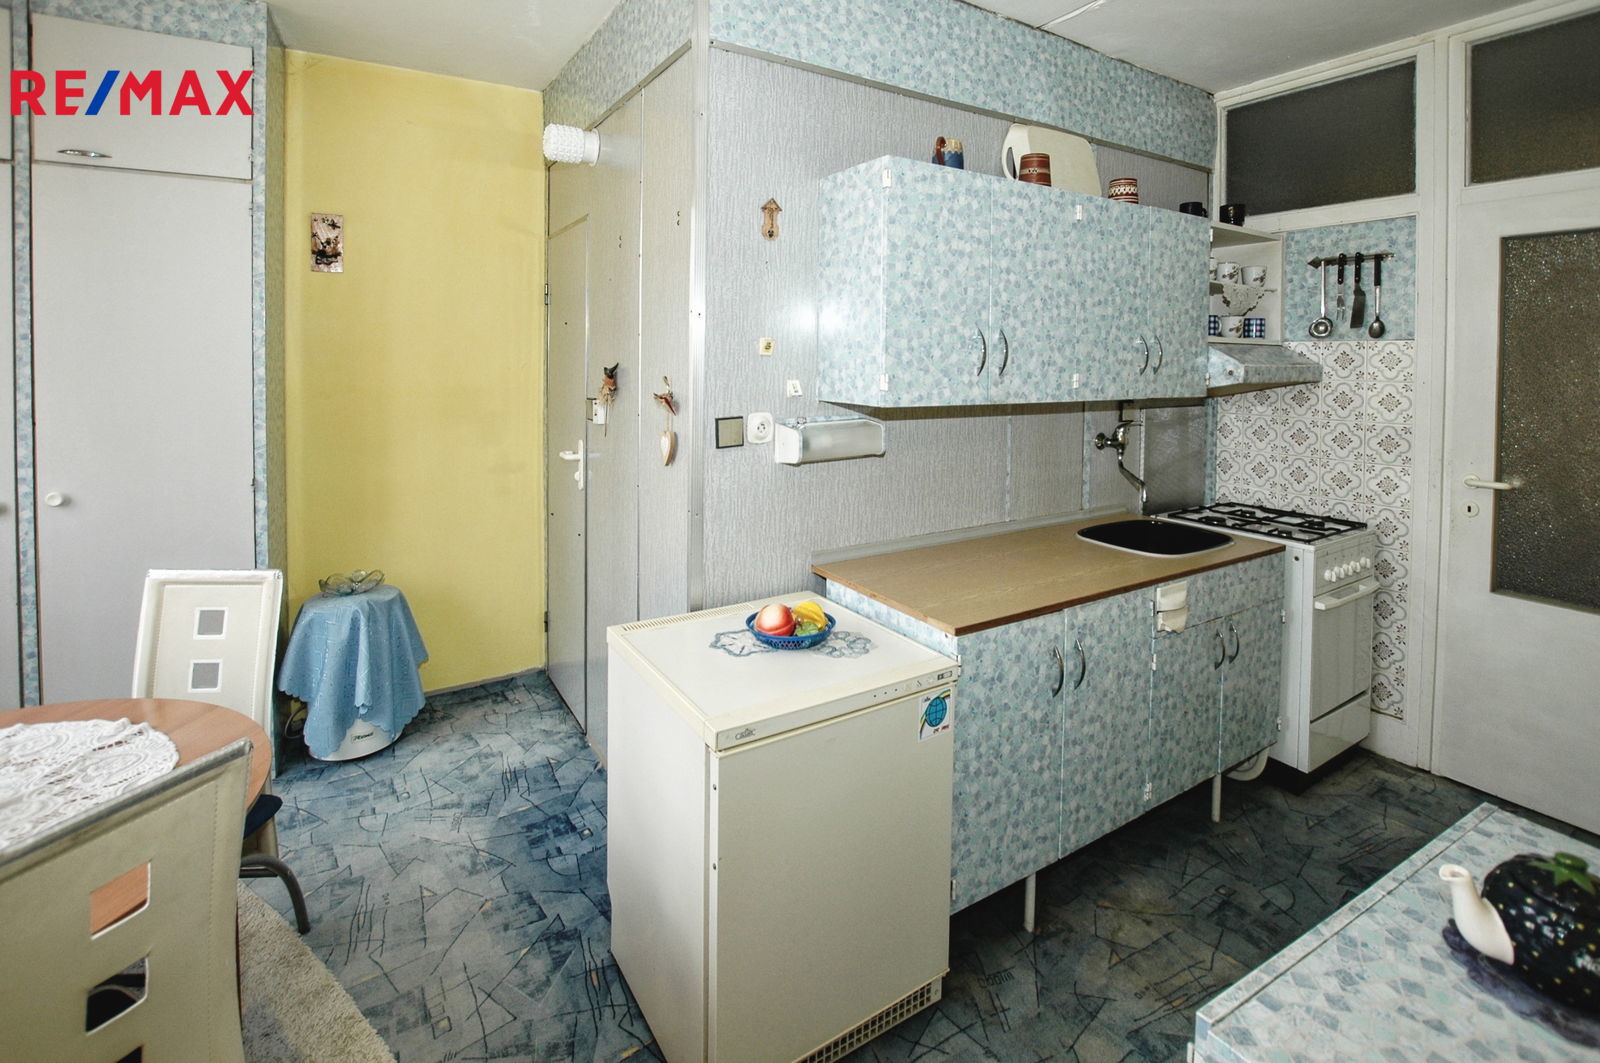 Prodej bytu 2+1 v osobním vlastnictví, 68 m2, Sokolov